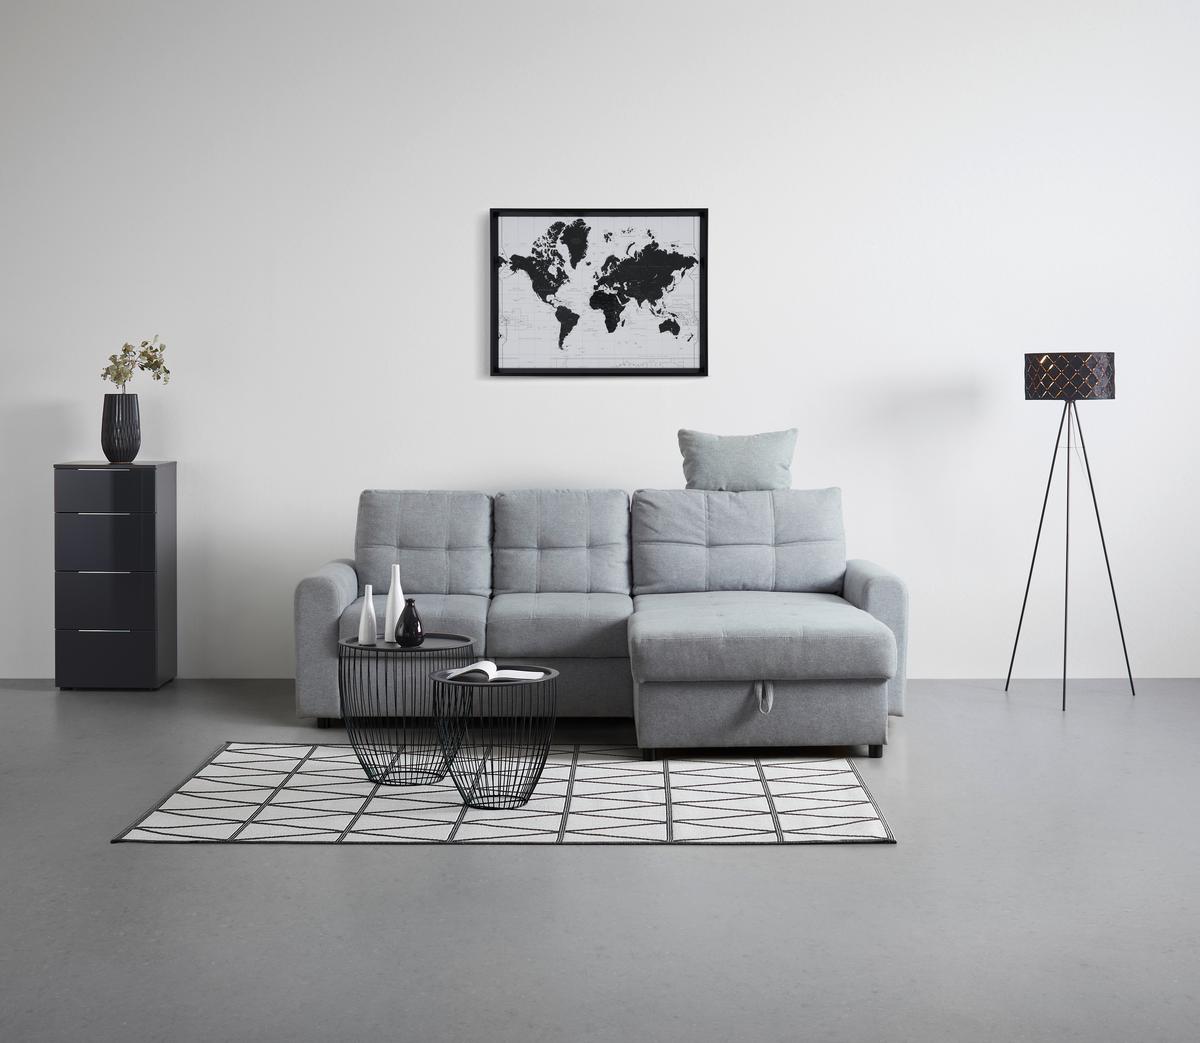 Sedežna Garnitura Natalie, Z Ležiščem In Predalom - siva/črna, Konvencionalno, umetna masa/tekstil (232/89/153cm) - Modern Living